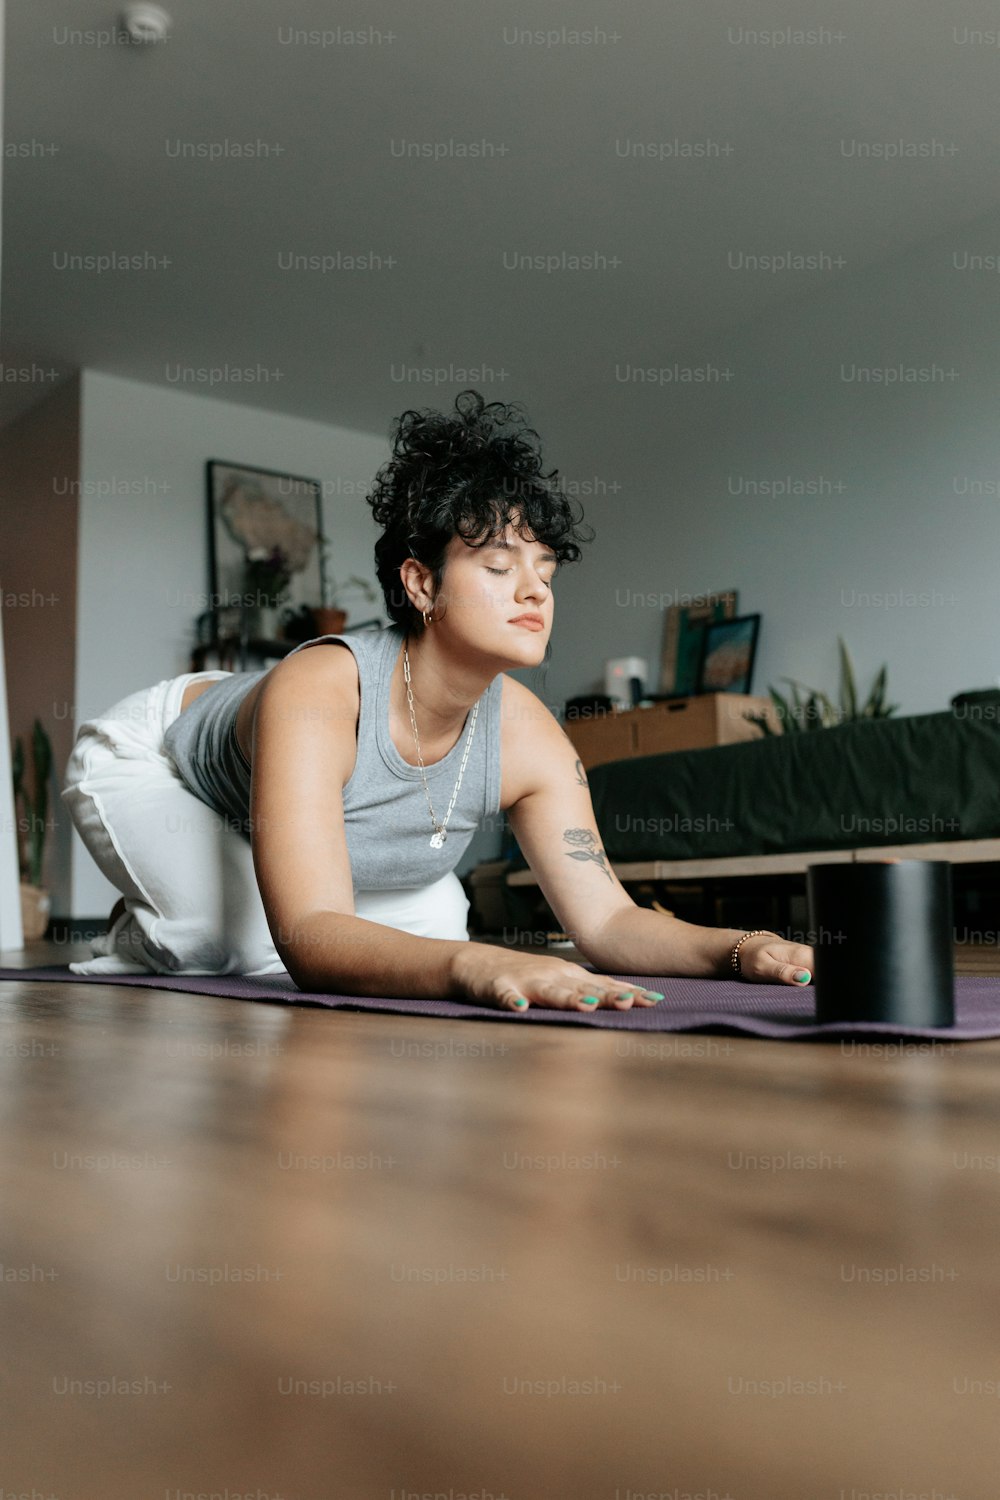 Eine Frau, die auf einer Yogamatte in einem Wohnzimmer liegt